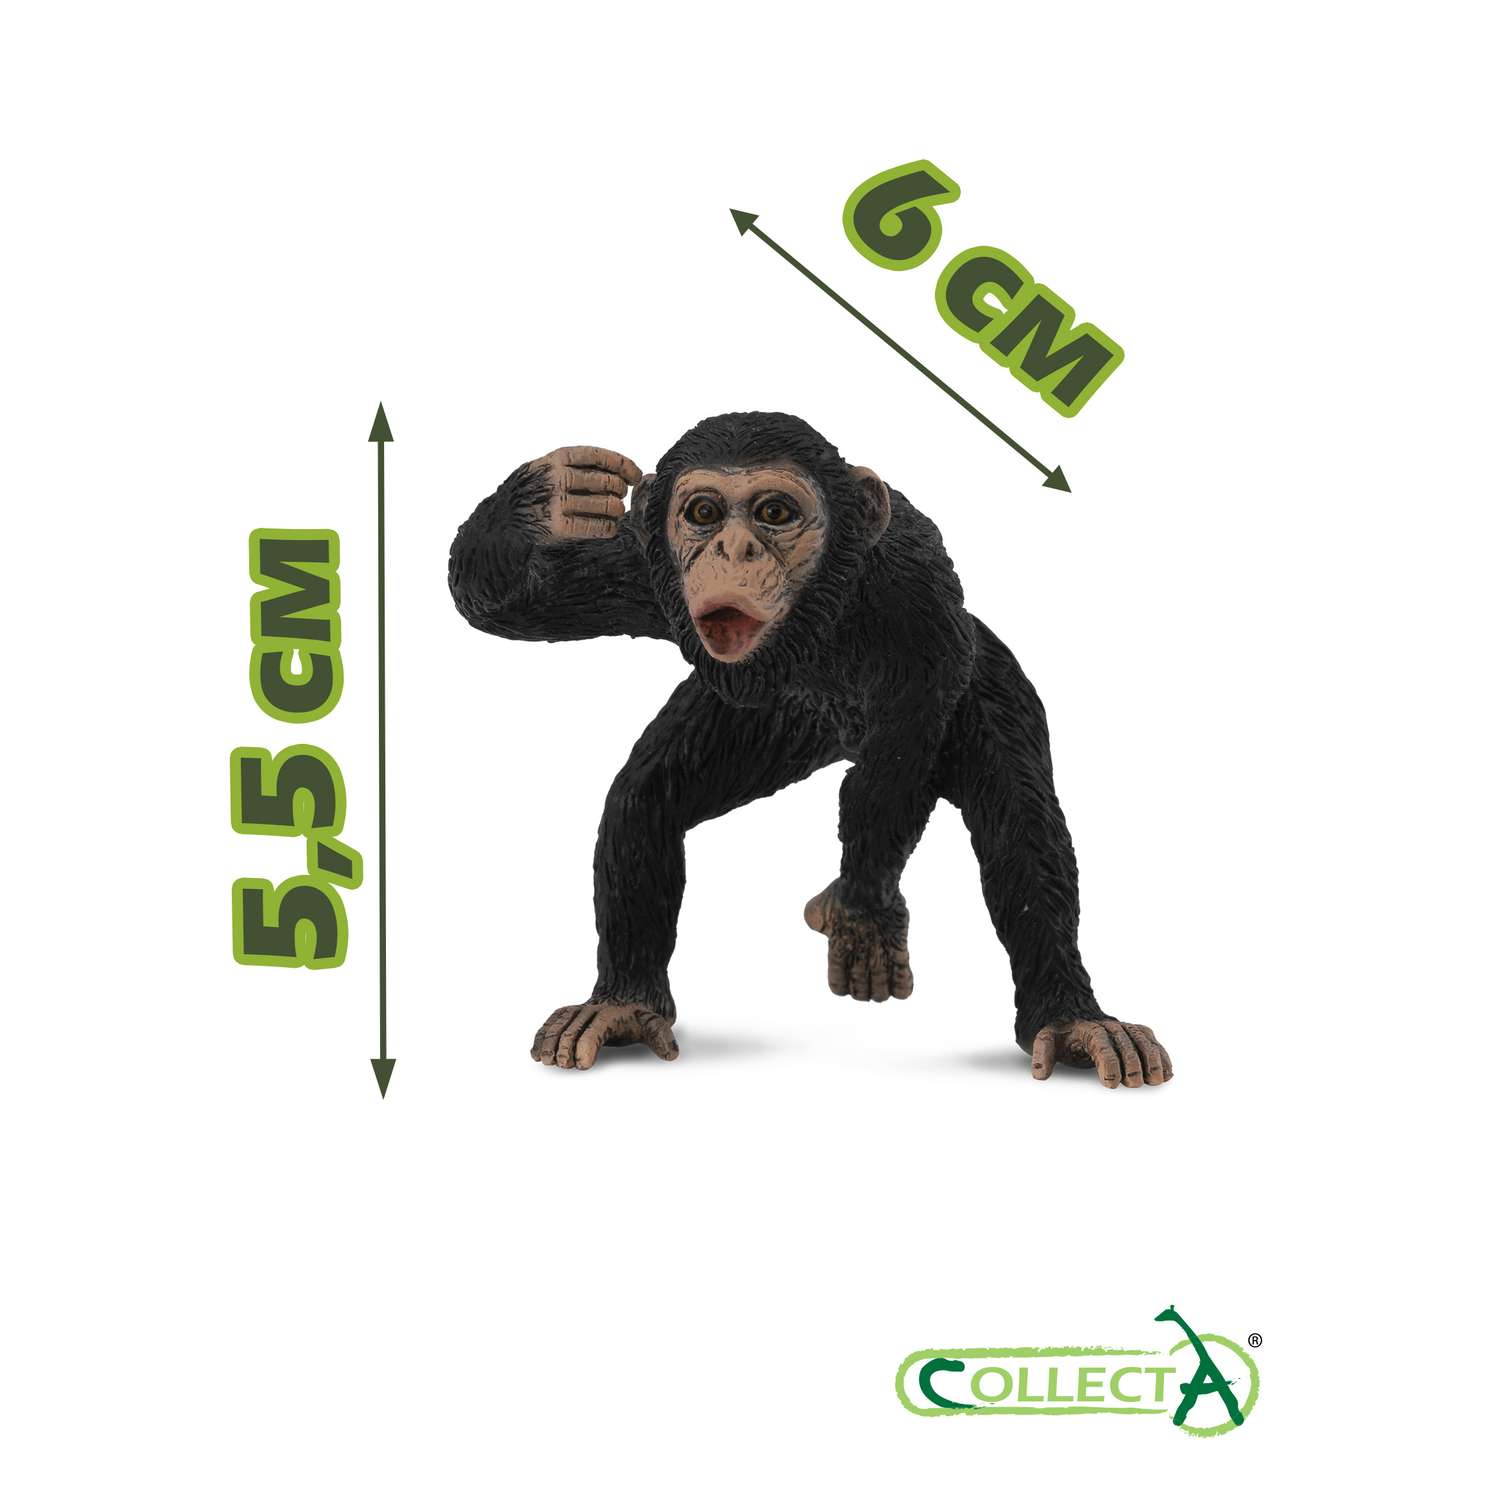 Фигурка животного Collecta Шимпанзе самец - фото 2